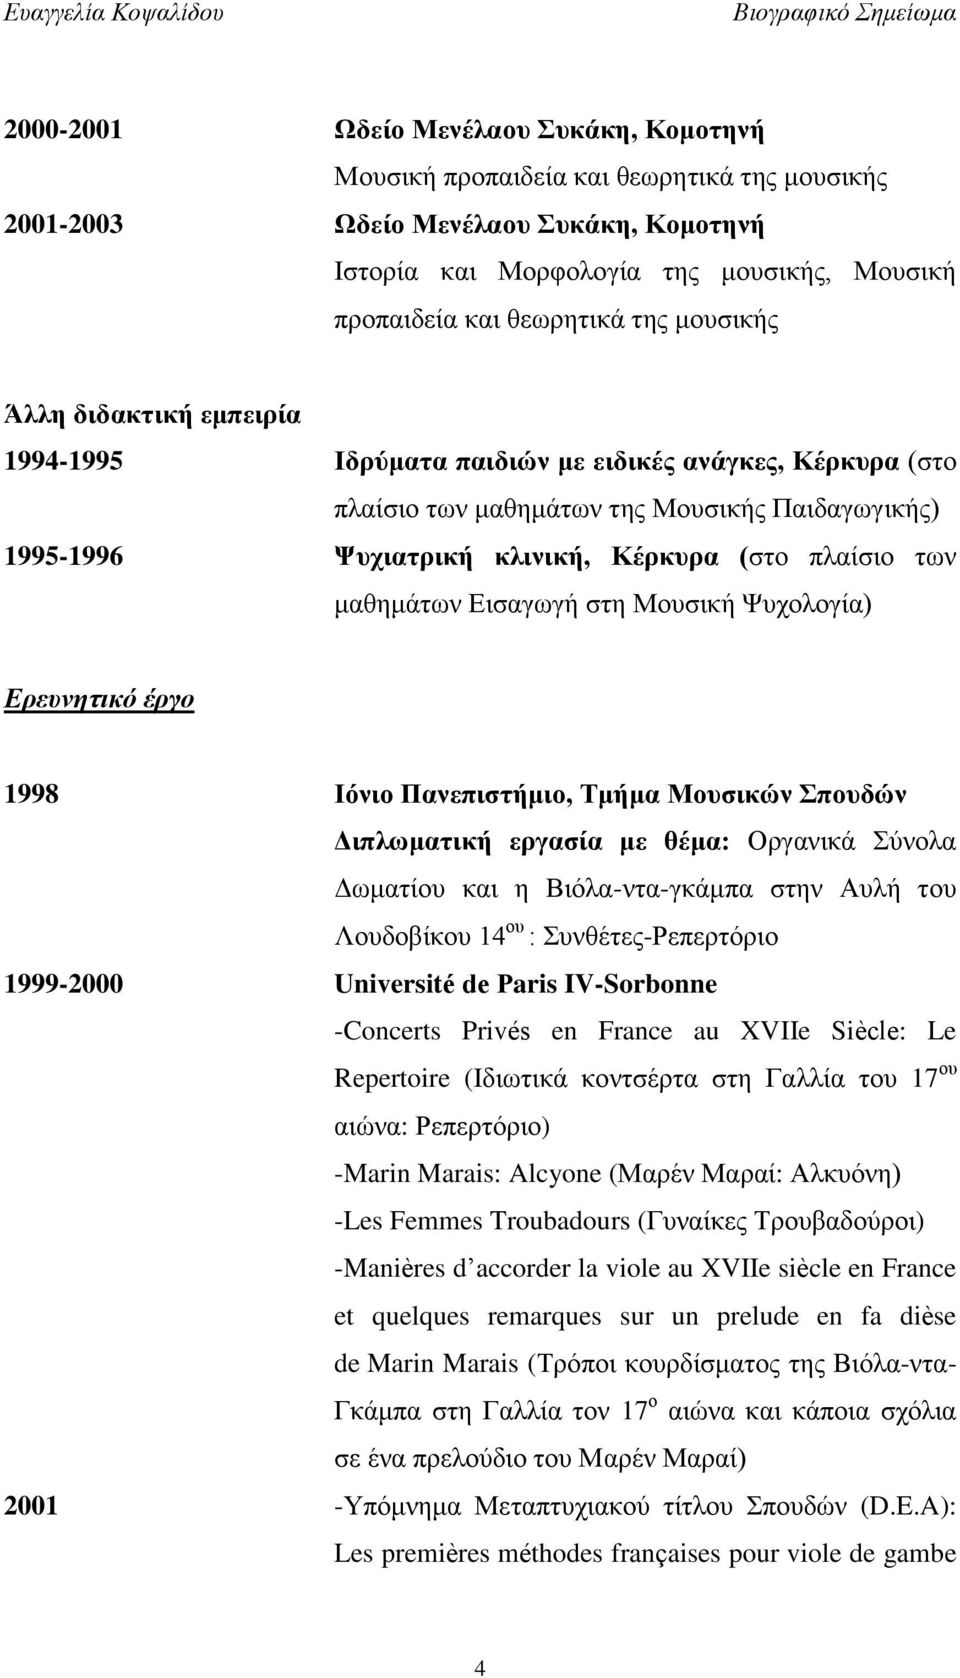 των μαθημάτων Εισαγωγή στη Μουσική Ψυχολογία) Ερευνητικό έργο 1998 Ιόνιο Πανεπιστήμιο, Τμήμα Μουσικών Σπουδών Διπλωματική εργασία με θέμα: Οργανικά Σύνολα Δωματίου και η Βιόλα-ντα-γκάμπα στην Αυλή